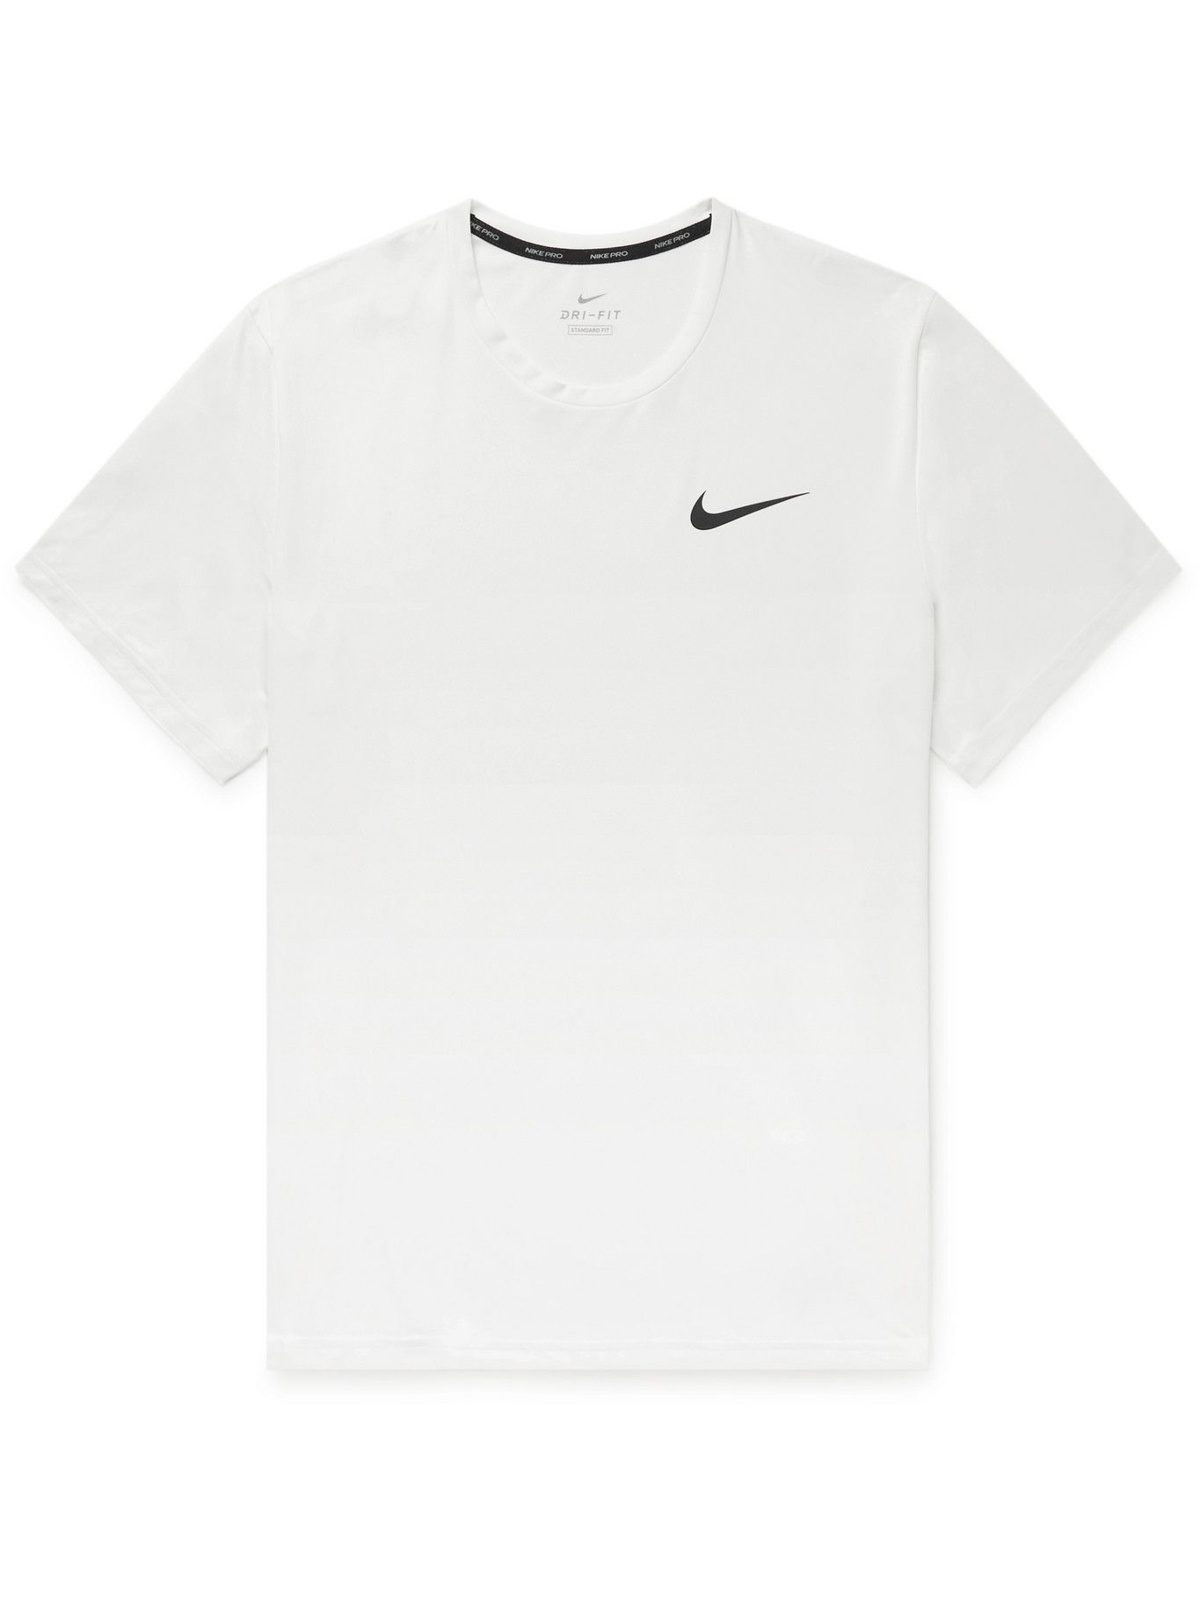 NIKE TRAINING - Pro T-Shirt - White Nike Training